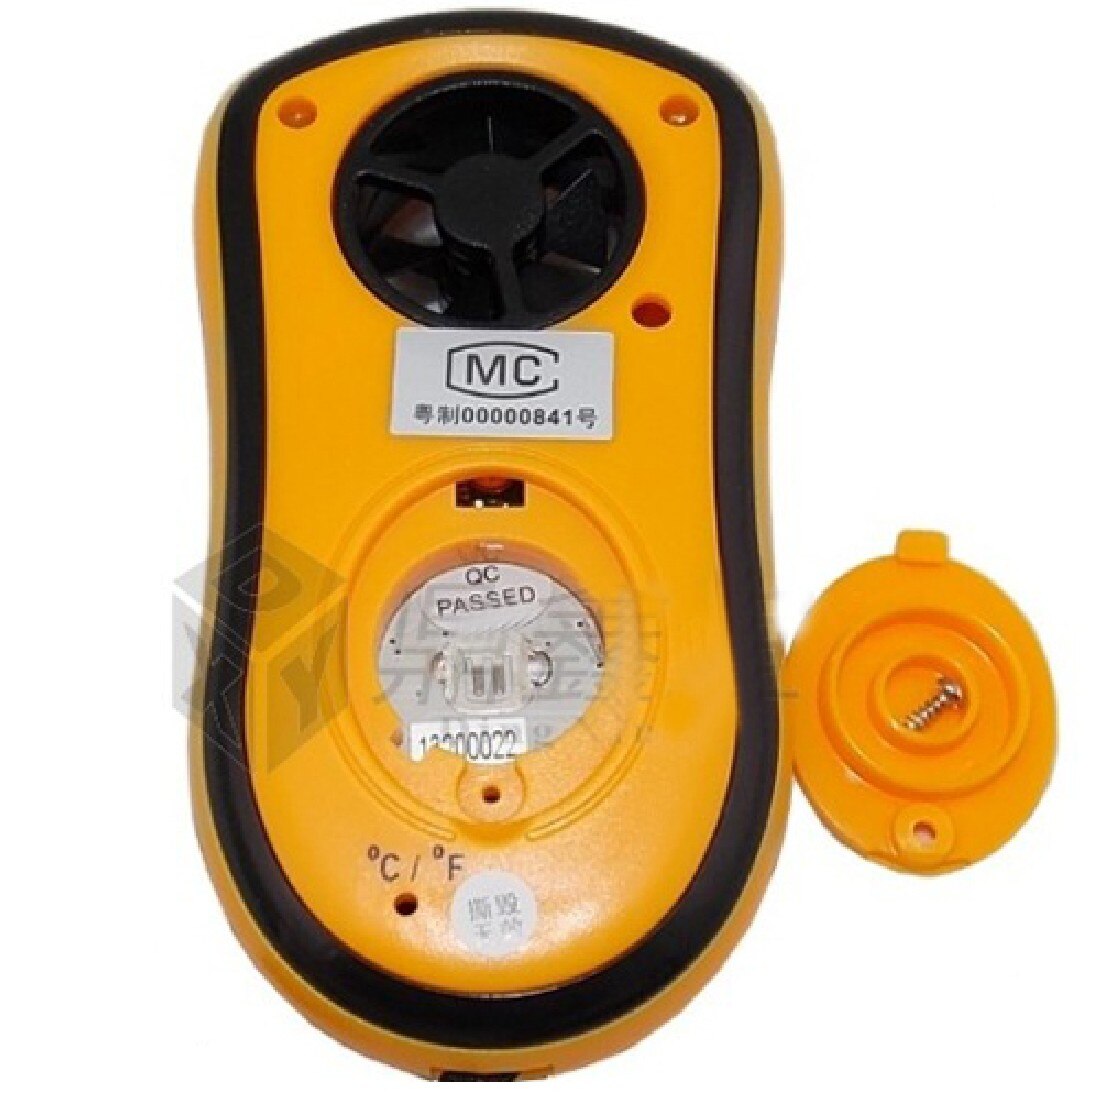 Portable Digital Anemometer for Measuring Wind Speed Handheld Wind Speed Meter with Backlight Wind Speed Gauge Meter